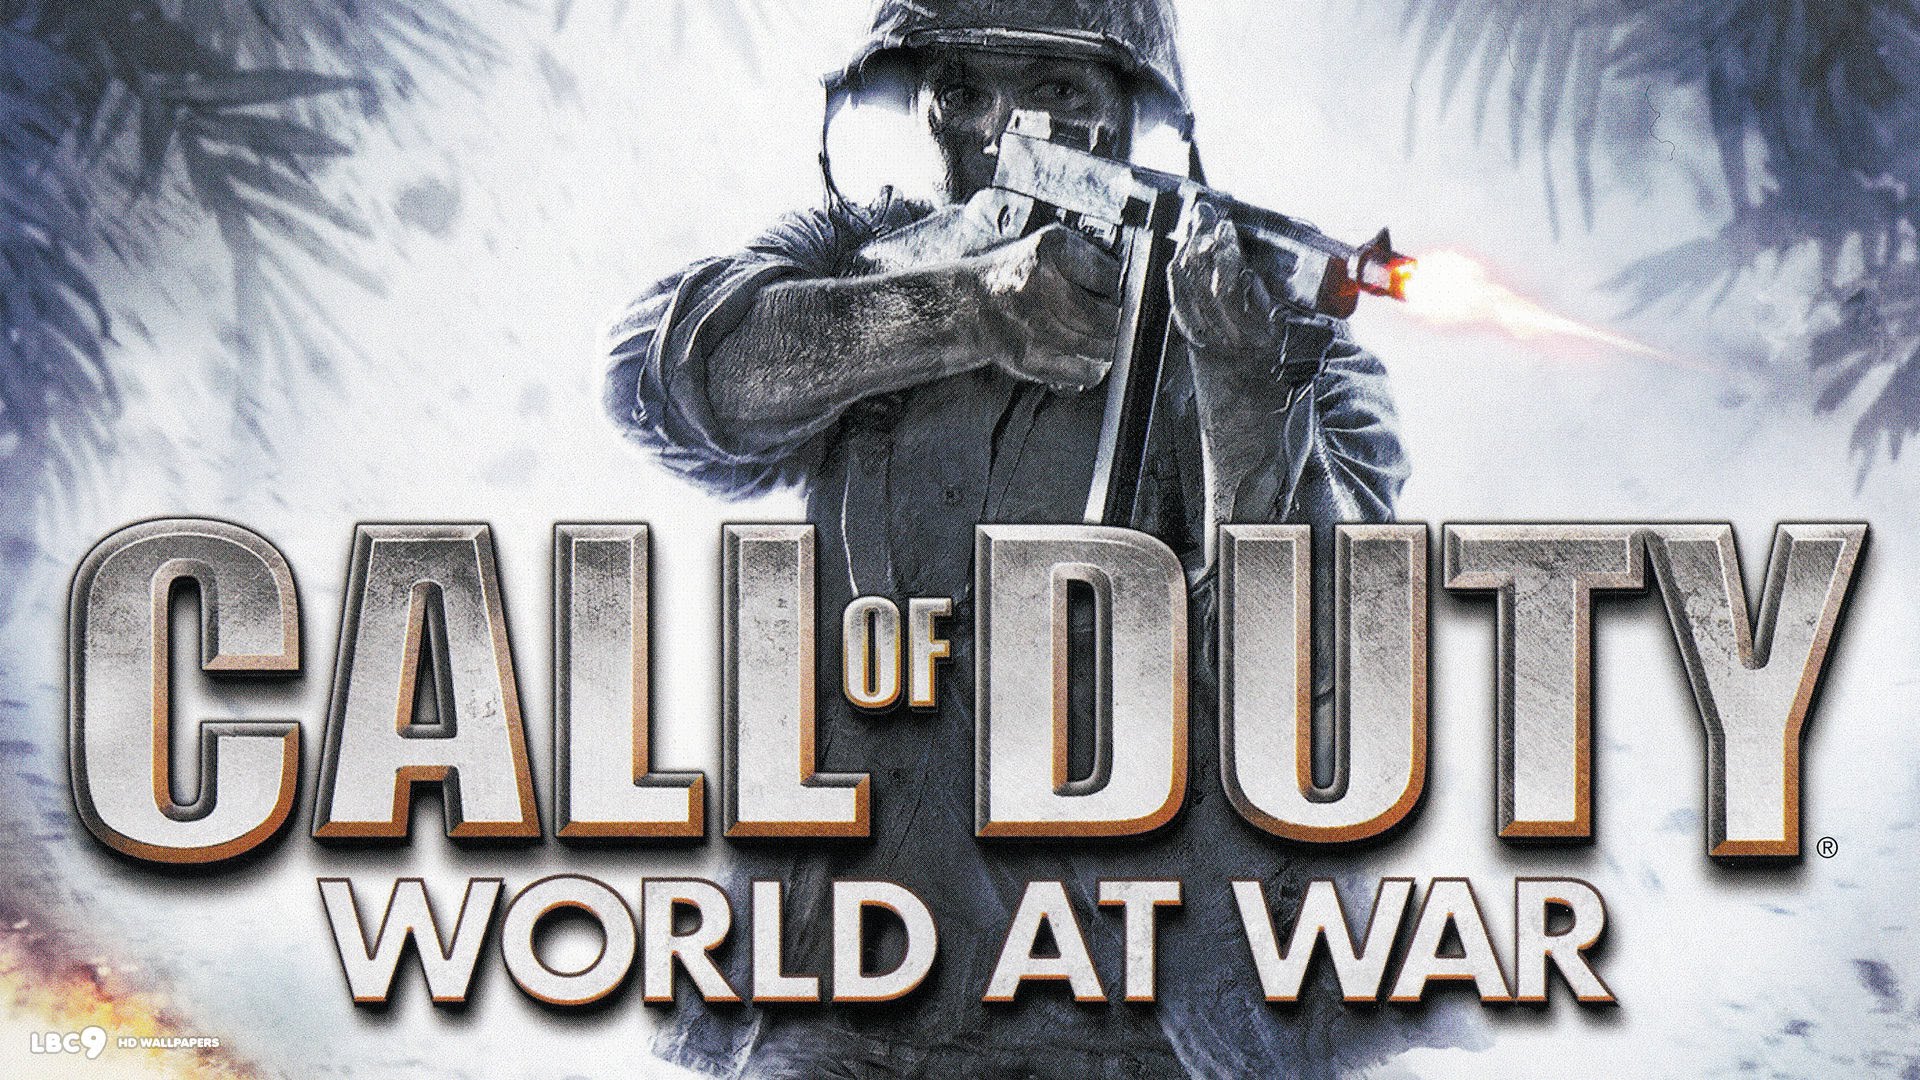 Call of Duty World At War Backwards Compatible, Activision, Xbox